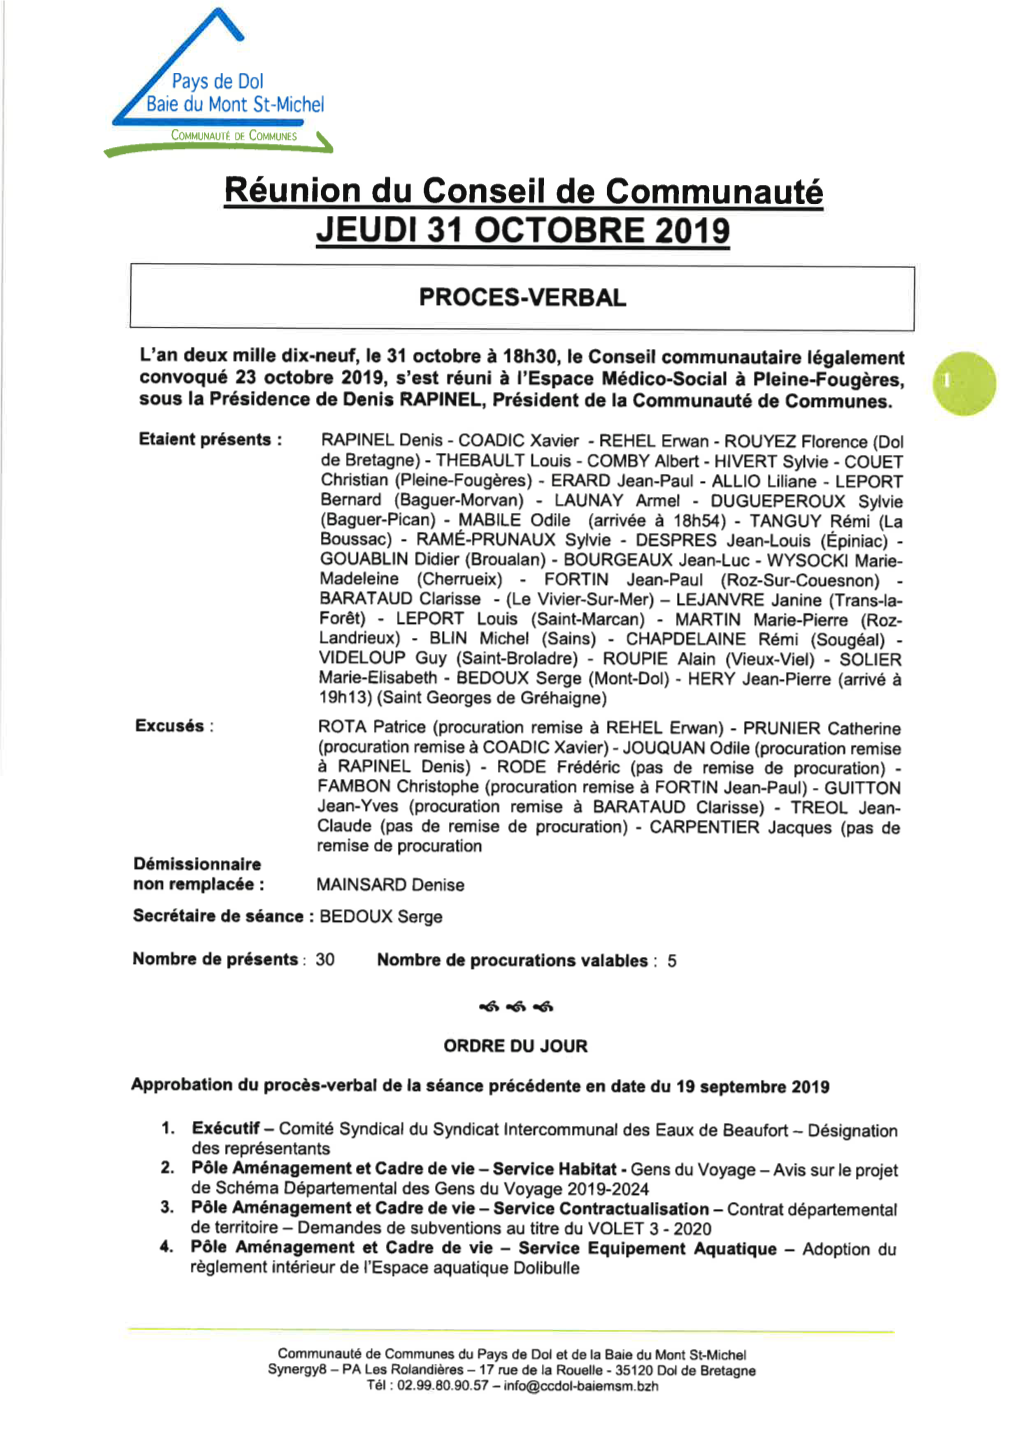 Réunion Du Conseil De Gommunauté JEUDI 31 Octobre 2019